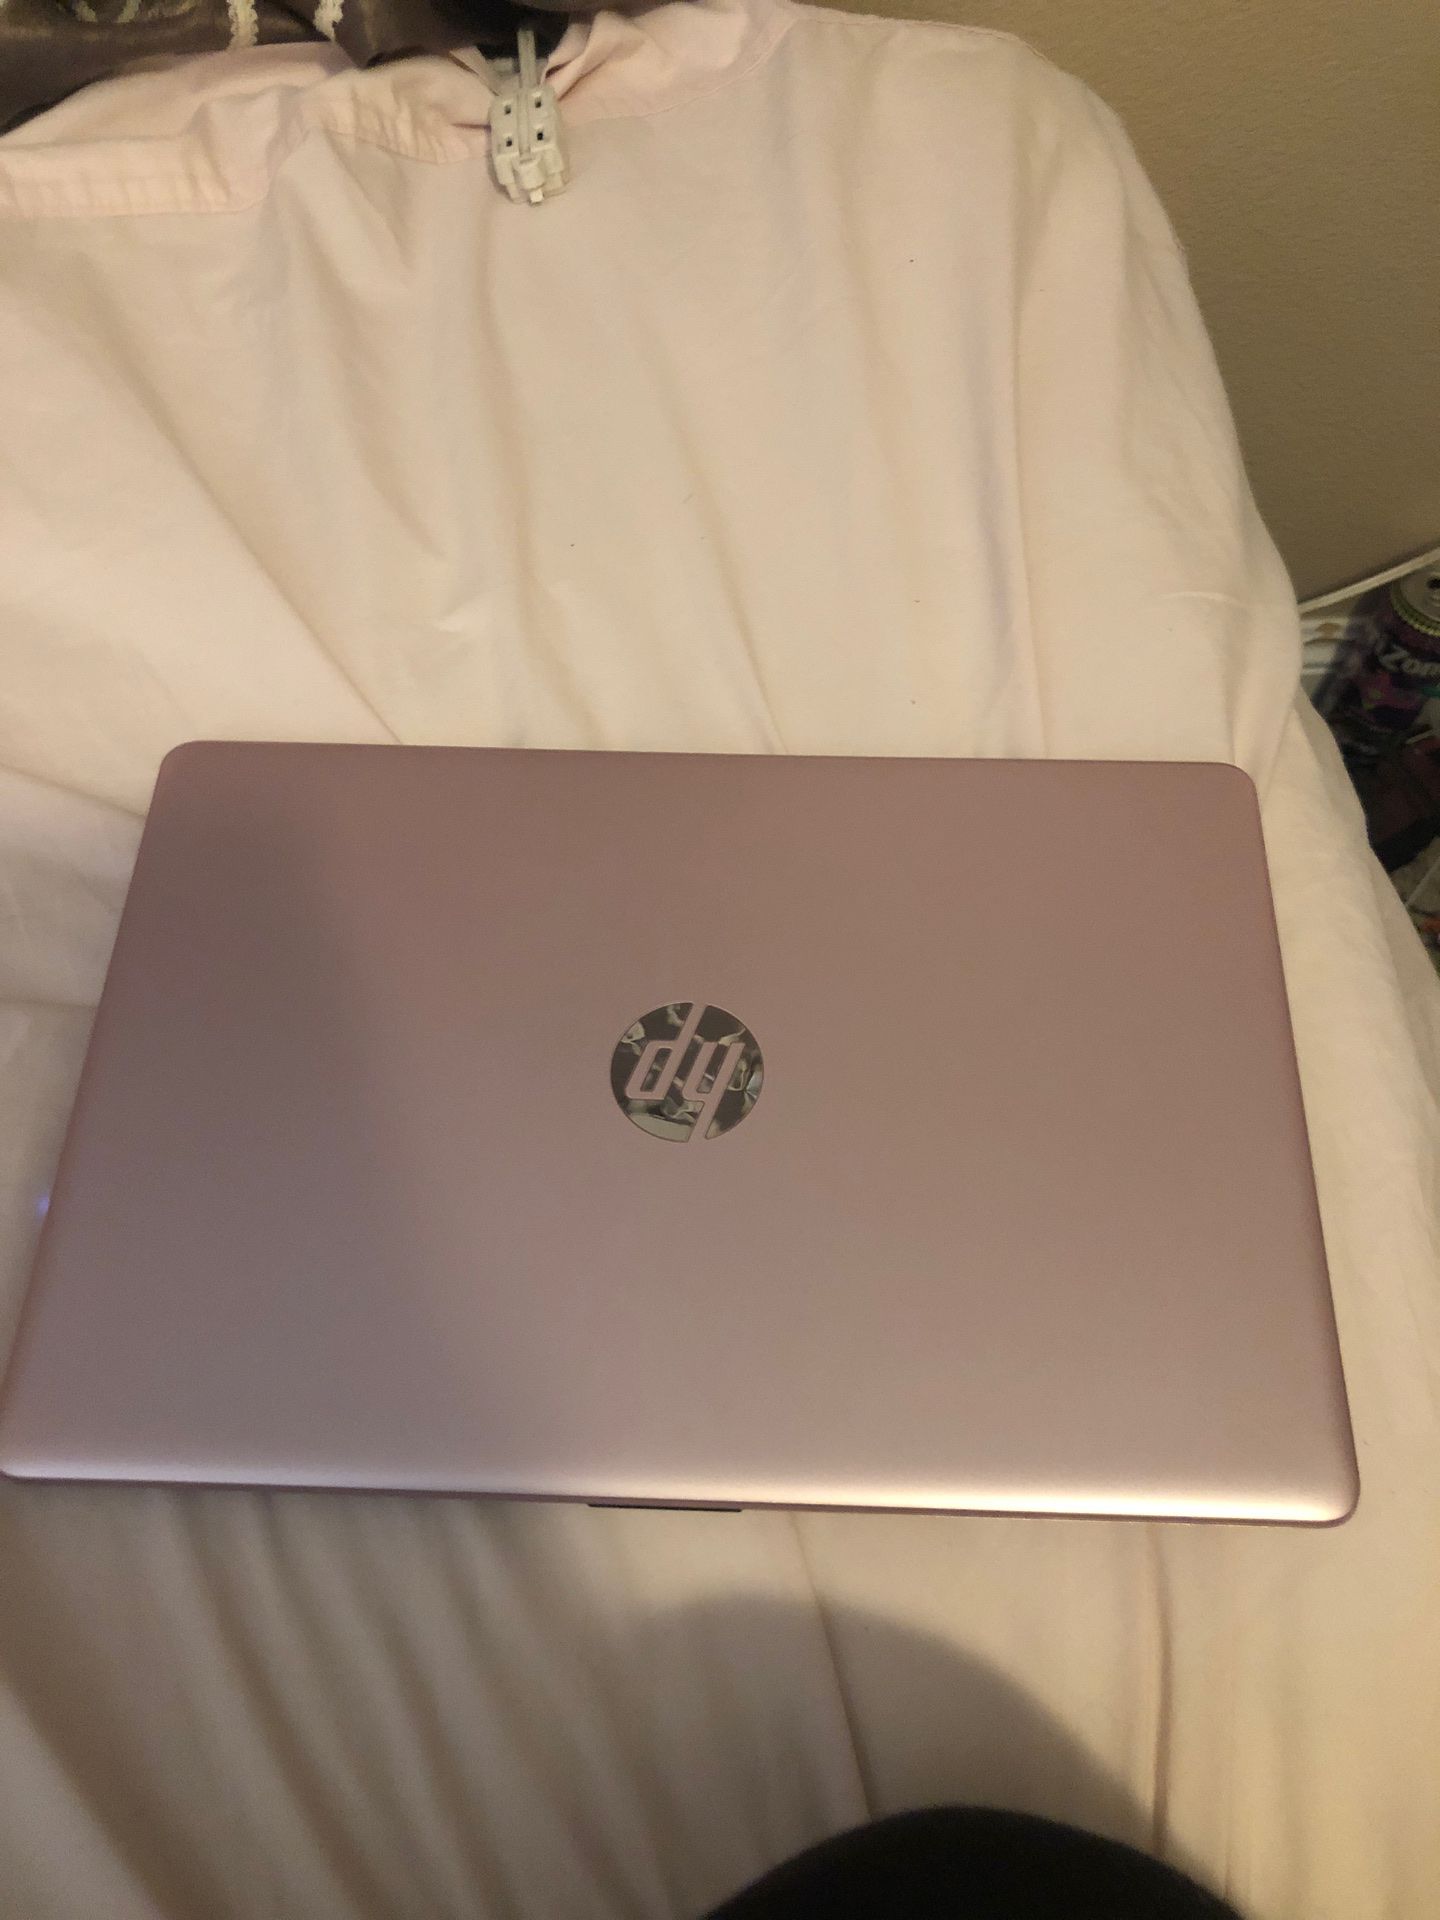 Semi new Hp Laptop